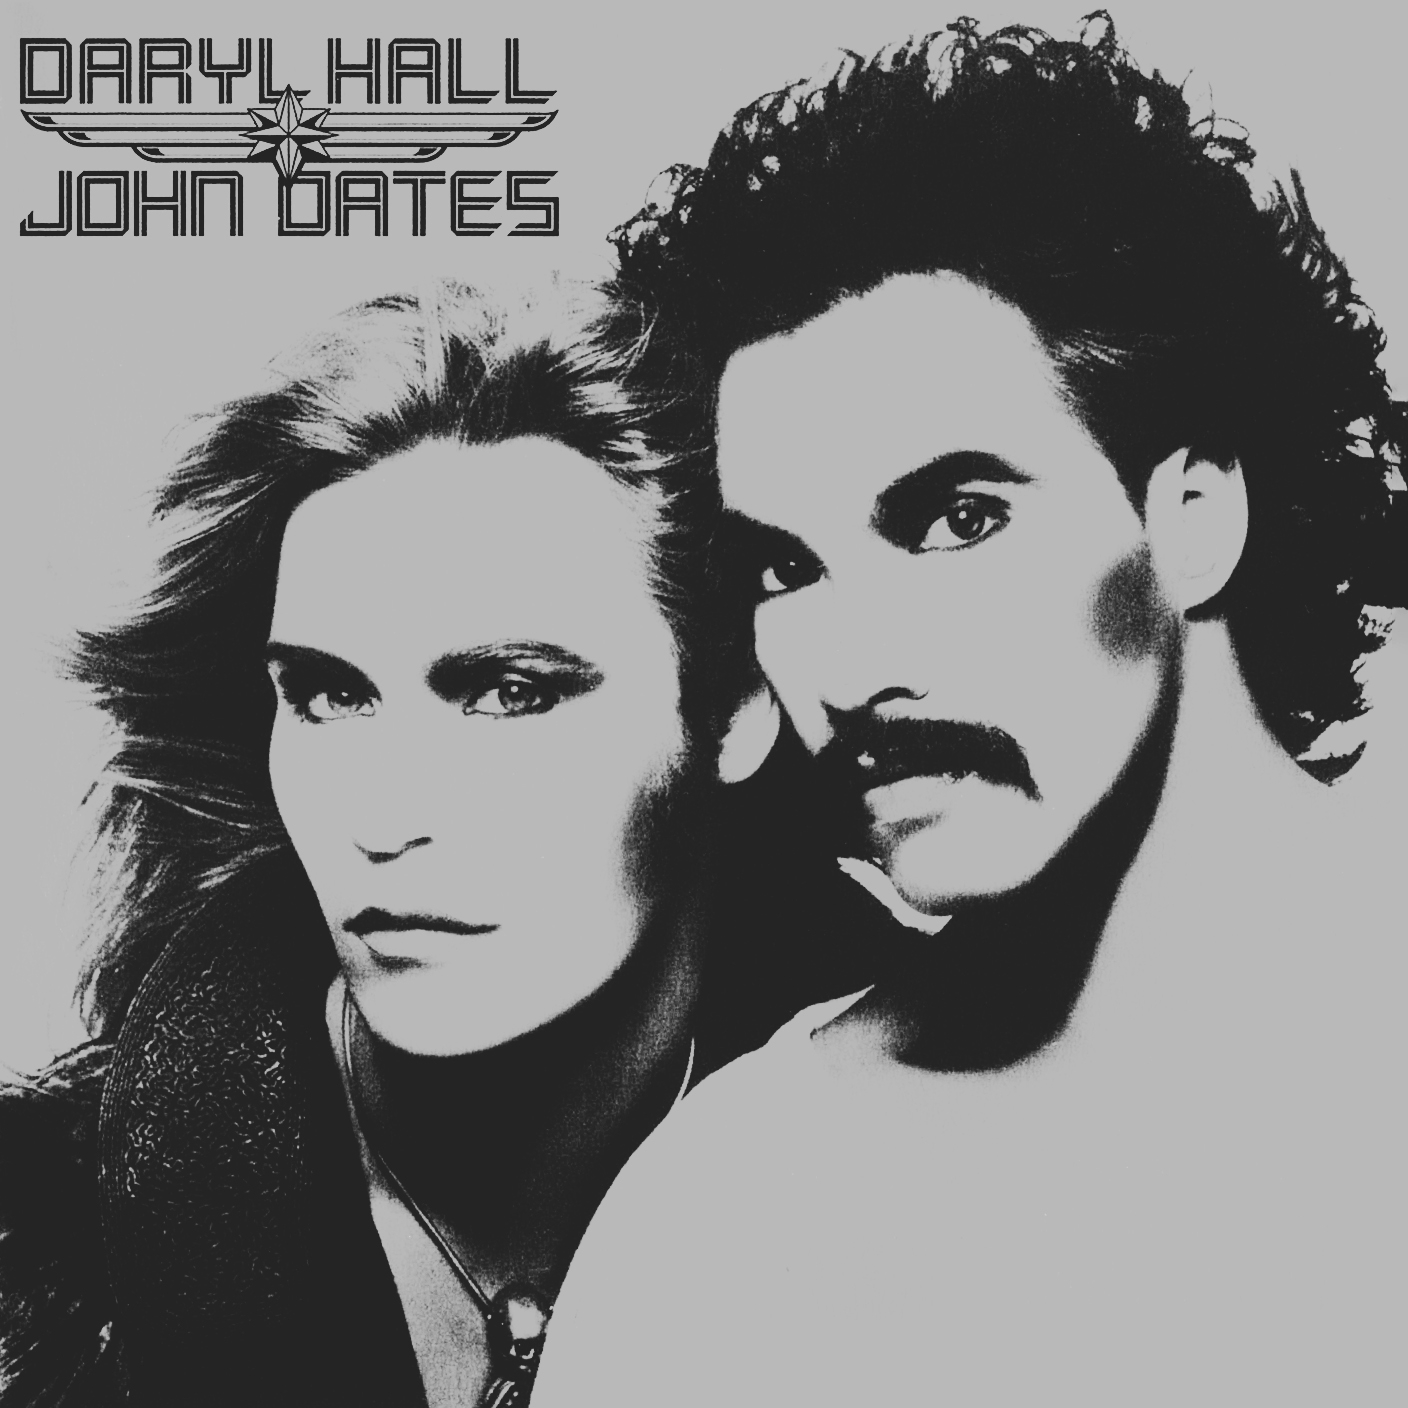 Daryl Hall & John Oates - Daryl Hall & John Oates - CD